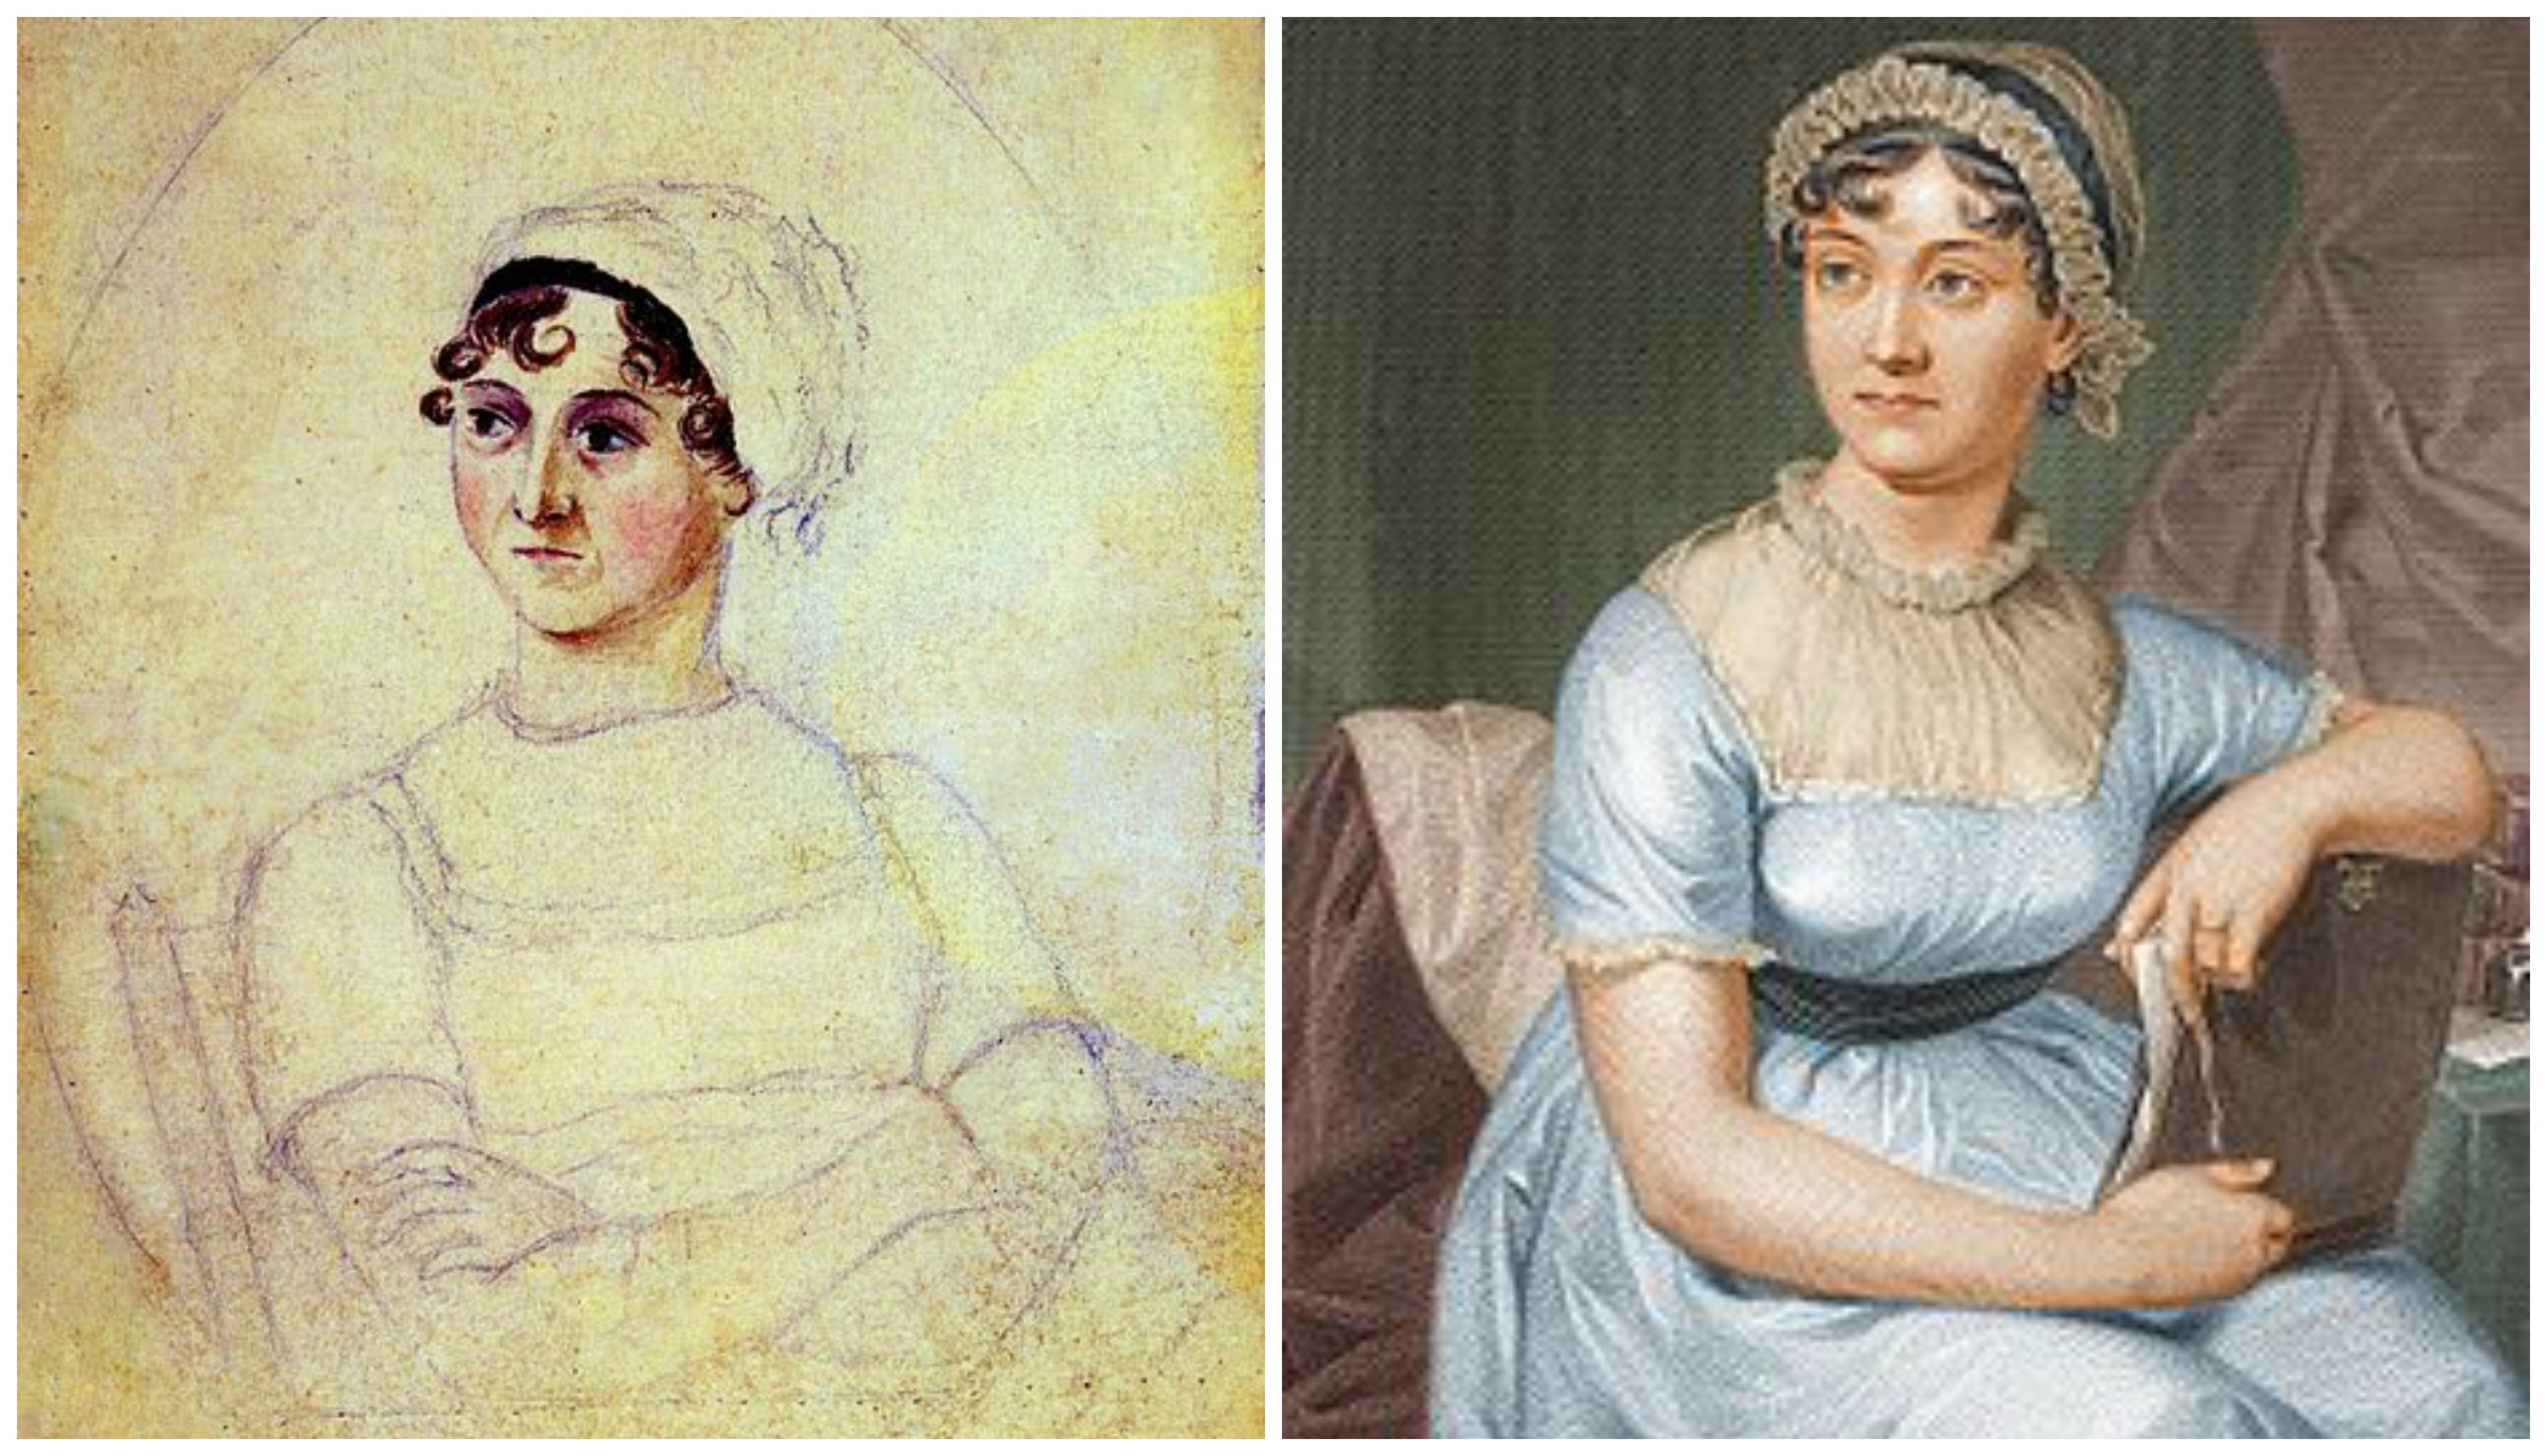 10 ting du (måske) ikke vidste om Jane Austen